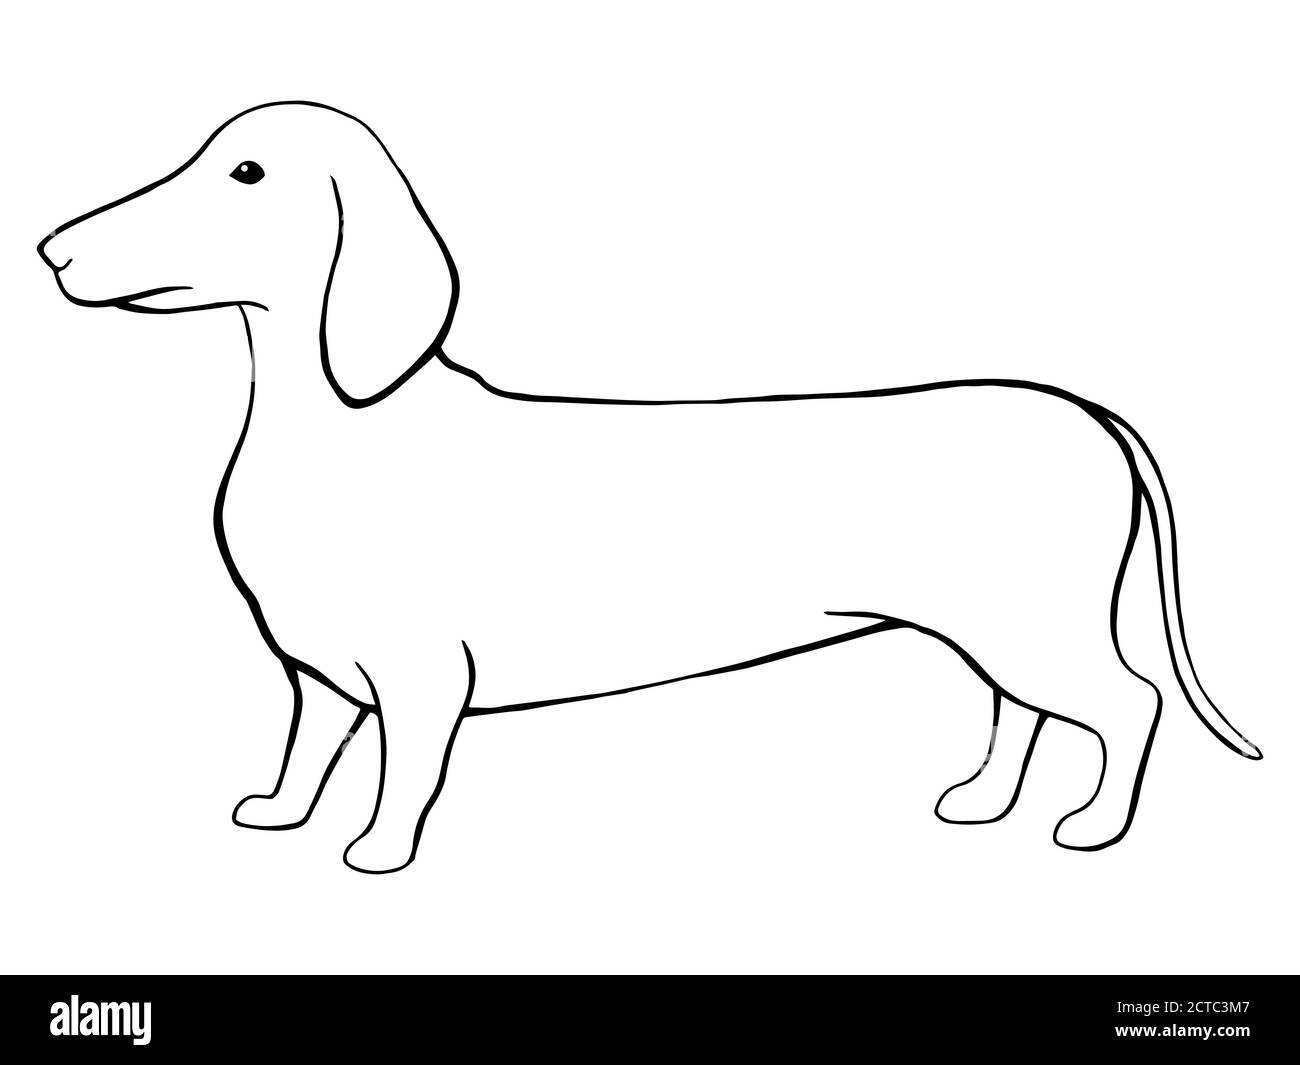 Chien dachshund graphique noir blanc isolé esquisse illustration vecteur Illustration de Vecteur